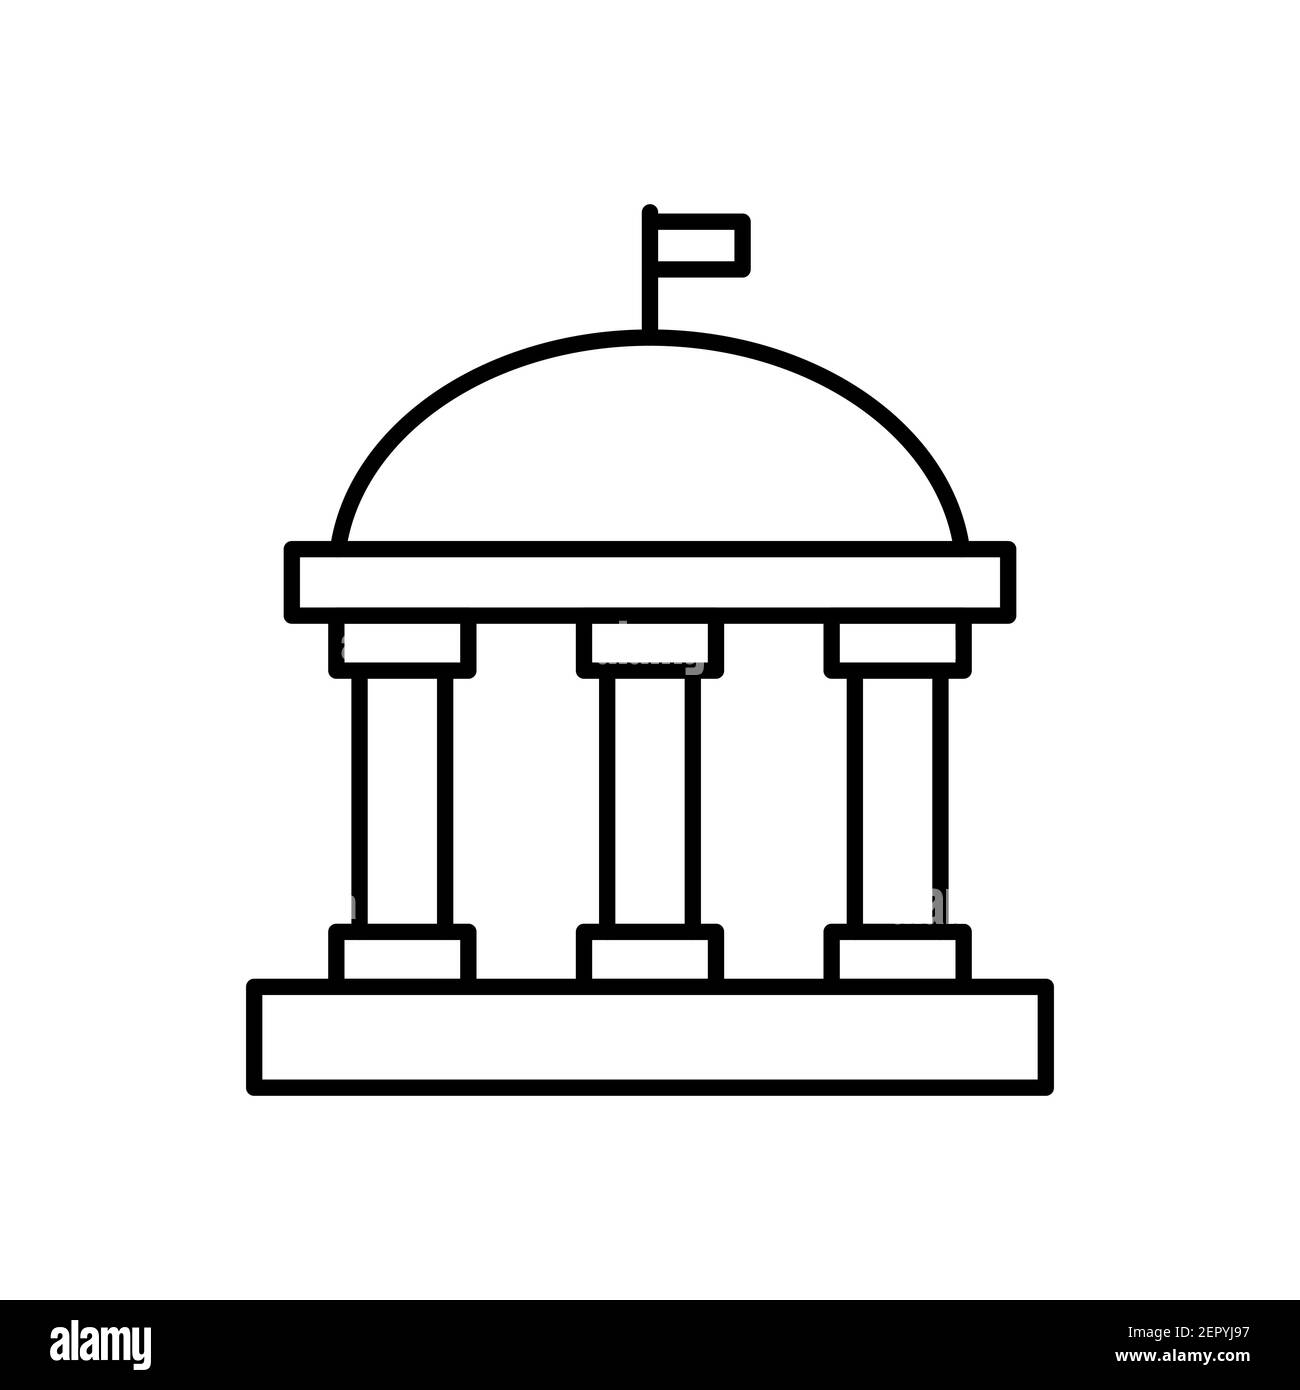 Icona della linea di banca. Segno lineare dell'università. Edificio con colonne simbolo di contorno. Vettore isolato su bianco Illustrazione Vettoriale